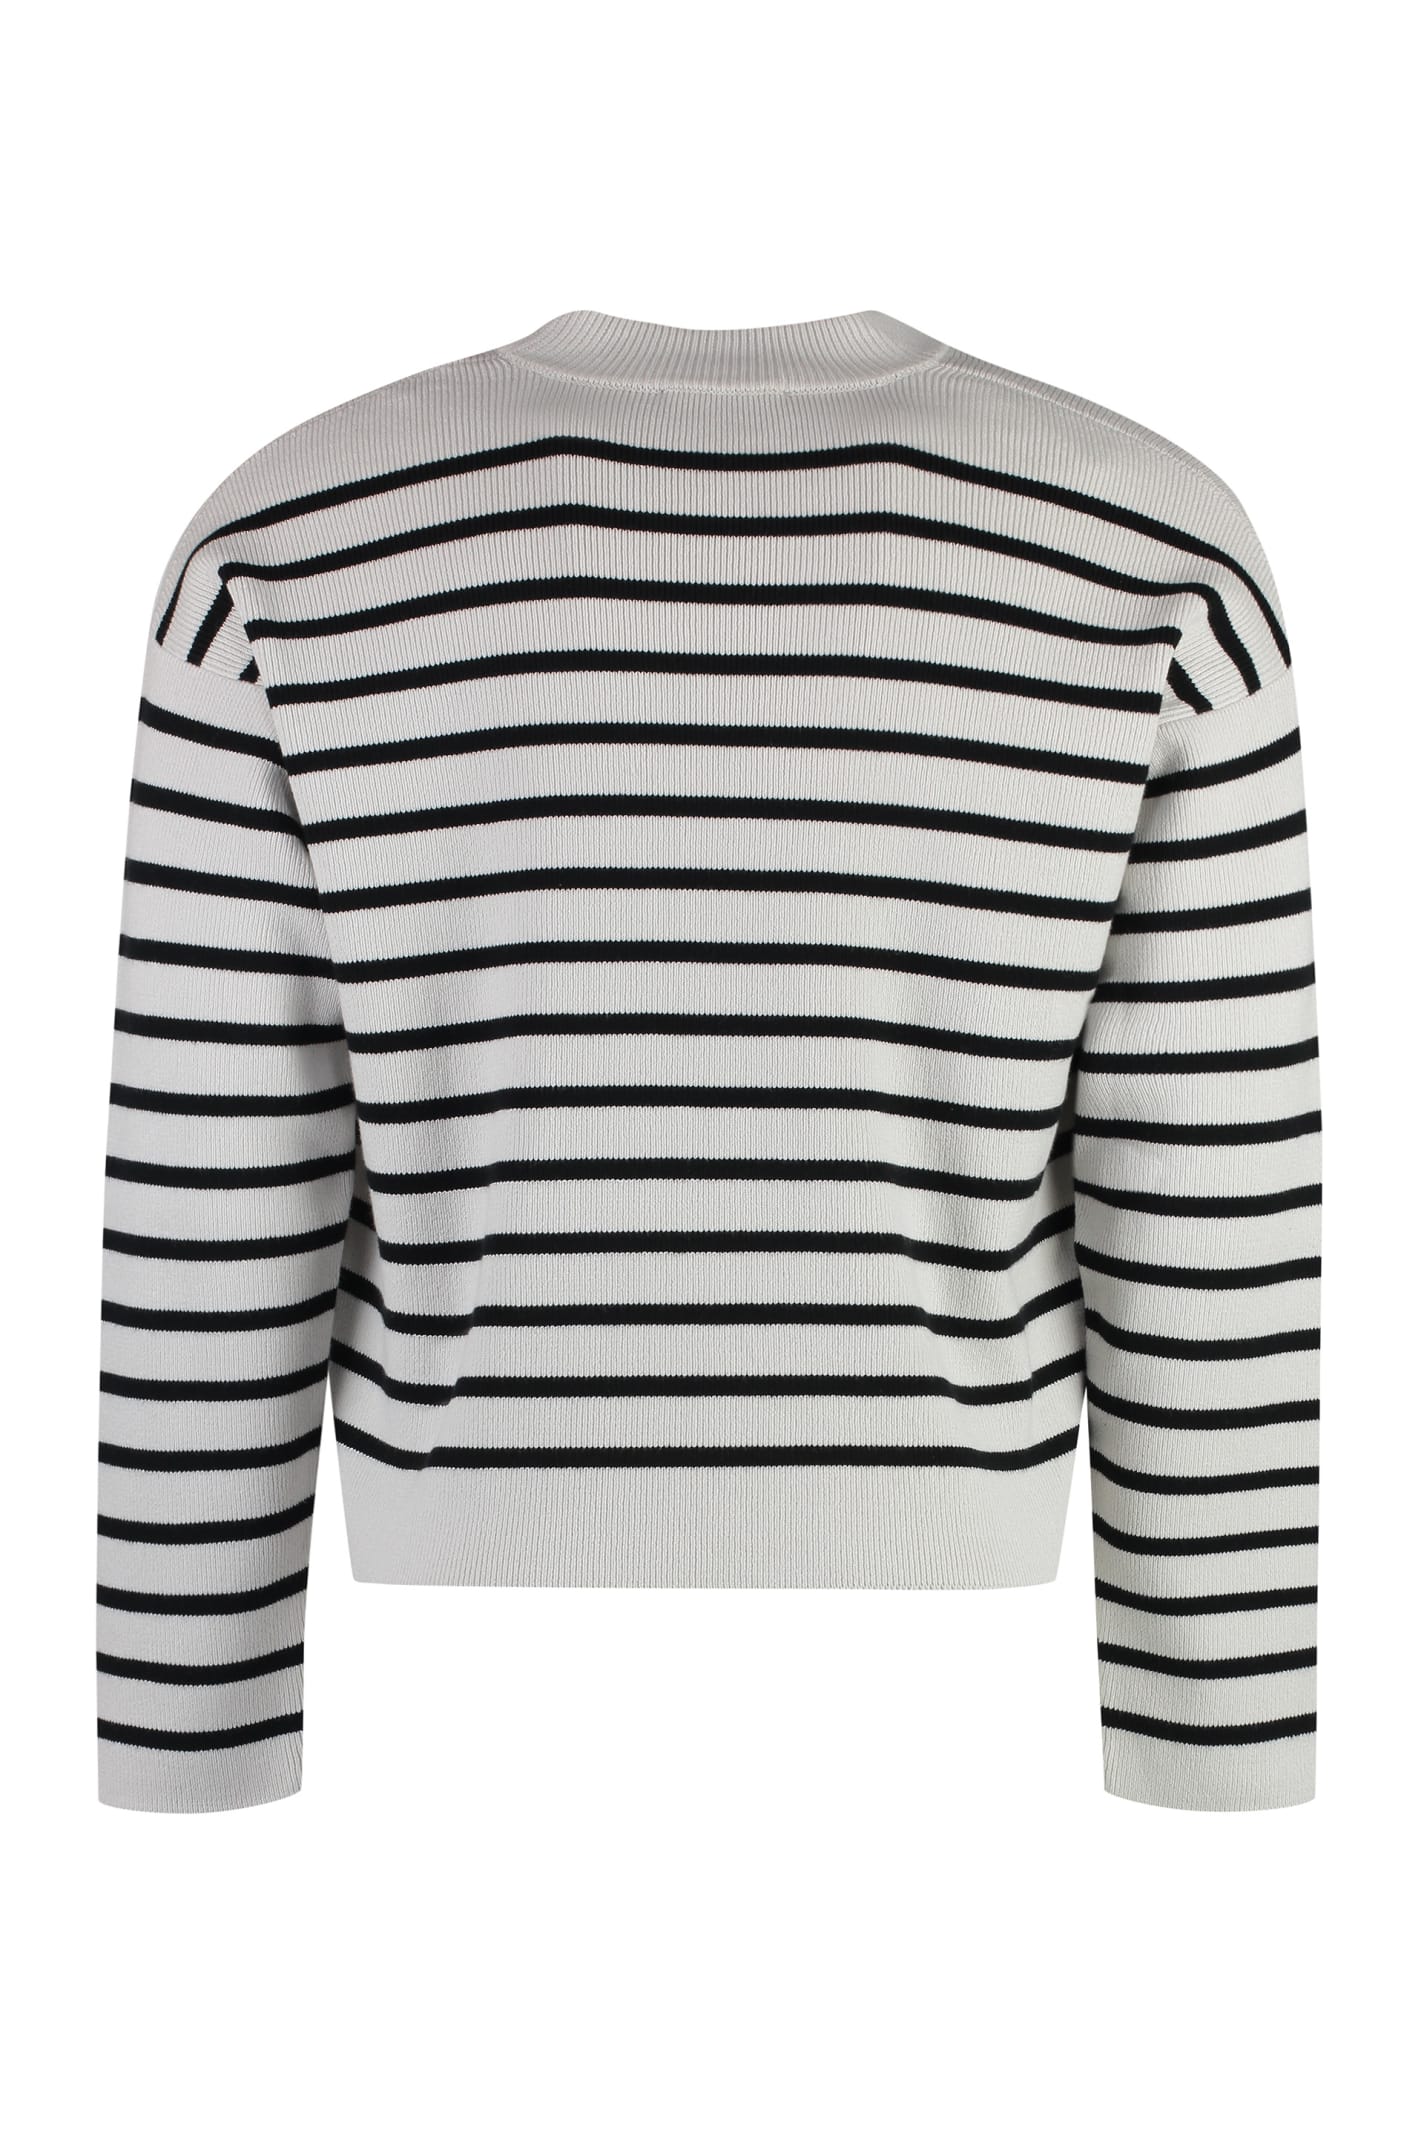 Shop Ami Alexandre Mattiussi Striped Crew-neck Sweater In Grey